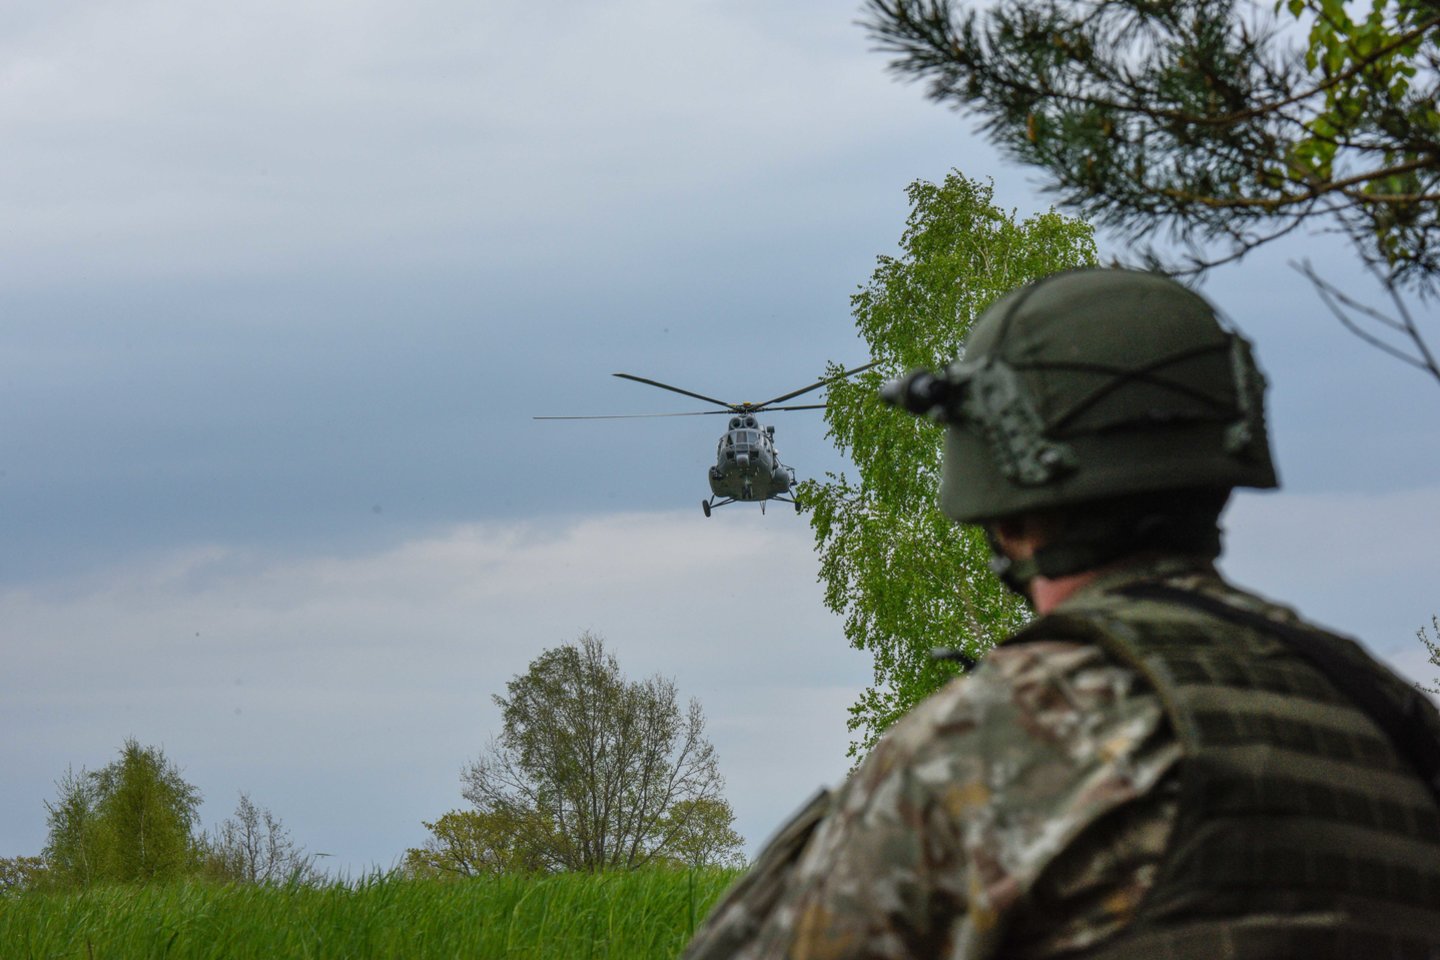  Baltijos šalyse ir Lenkijoje vyks oro gynybos pratybos, Šiaulių regione skris naikintuvai.<br> Karinių oro pajėgų informacija ir nuotr.